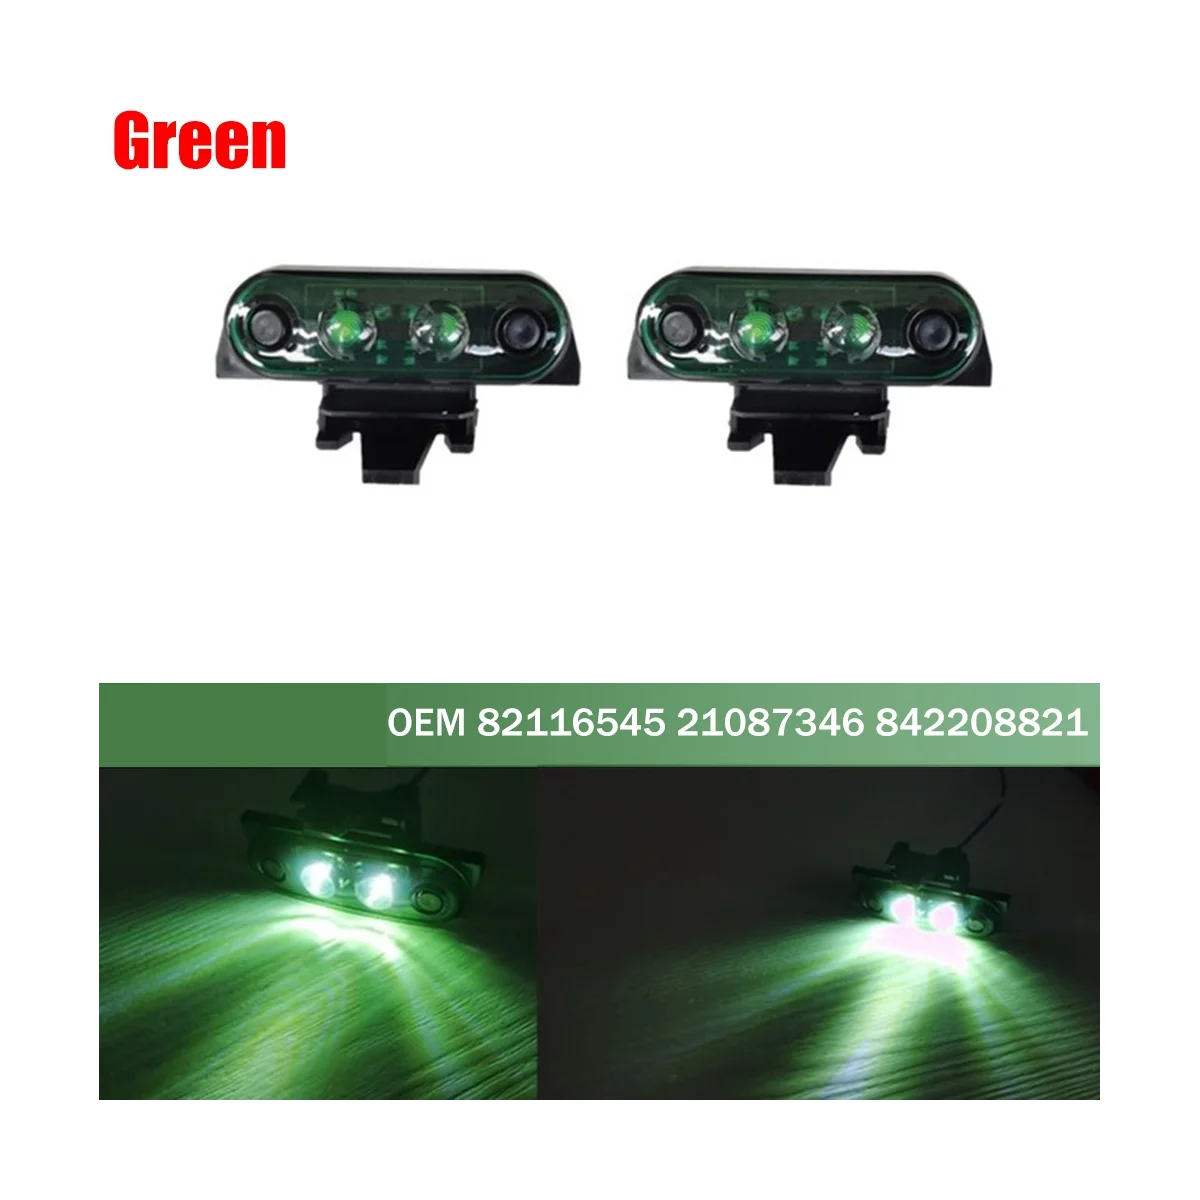 Truck felső lámpa FH16 FM teherautóhoz Teherautó oldalsó jelölők világos 82116545 21087346 842208821 zöld